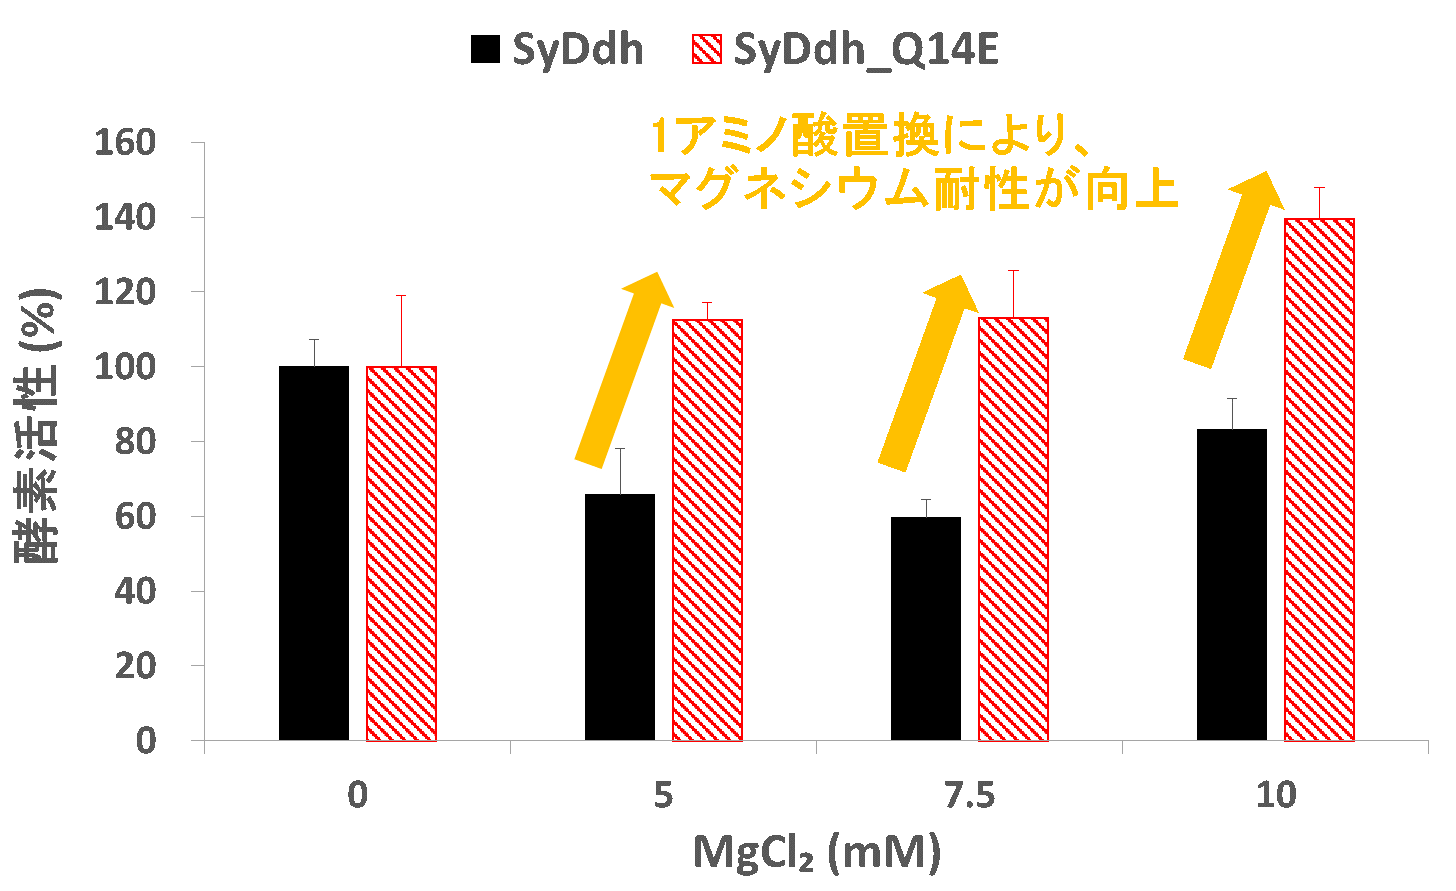 図2.SyDdhのマグネシウムに対する感受性 ／ 縦軸は酵素活性の相対値。塩化マグネシウム（MgCl₂）存在下で、SyDdhは活性が低下しますが、14番目のアミノ酸をグルタミン酸に置換したSyDdh_Q14Eでは活性が向上します。